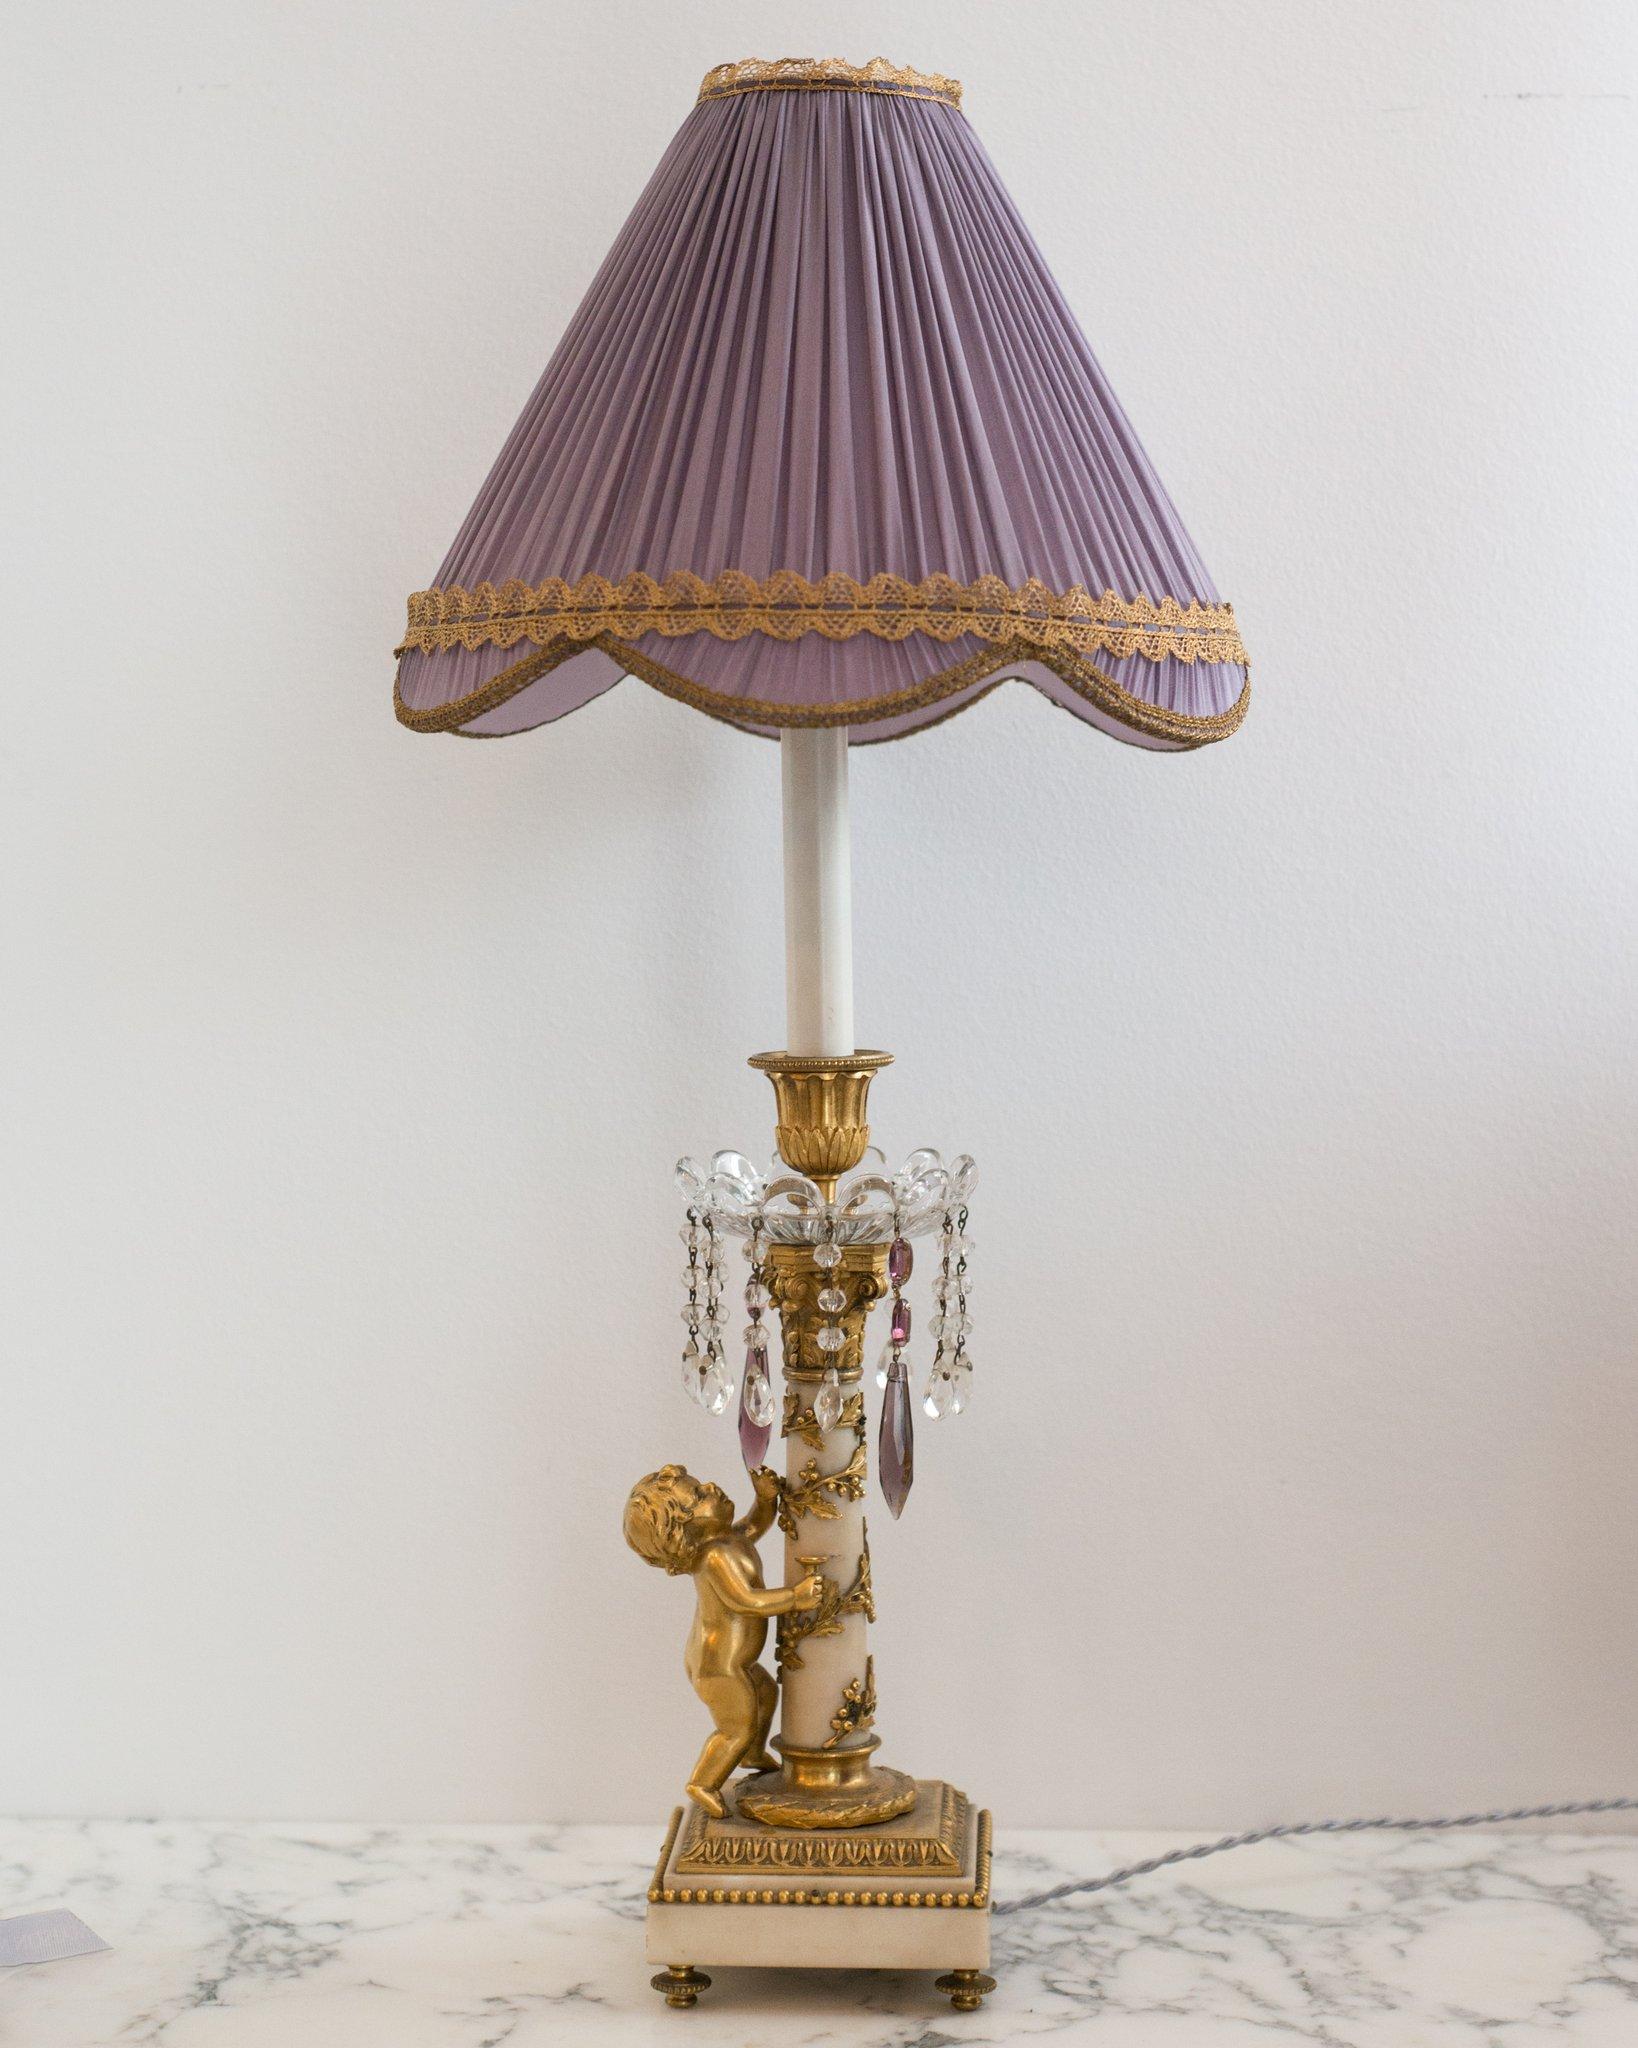 Lampe française ancienne en marbre et bronze avec des gouttes en cristal et améthyste et un chérubin en bronze, vers 1880. Nouvellement recâblé avec un cordon en soie et un abat-jour en soie lavande plissé sur mesure avec une garniture métallique